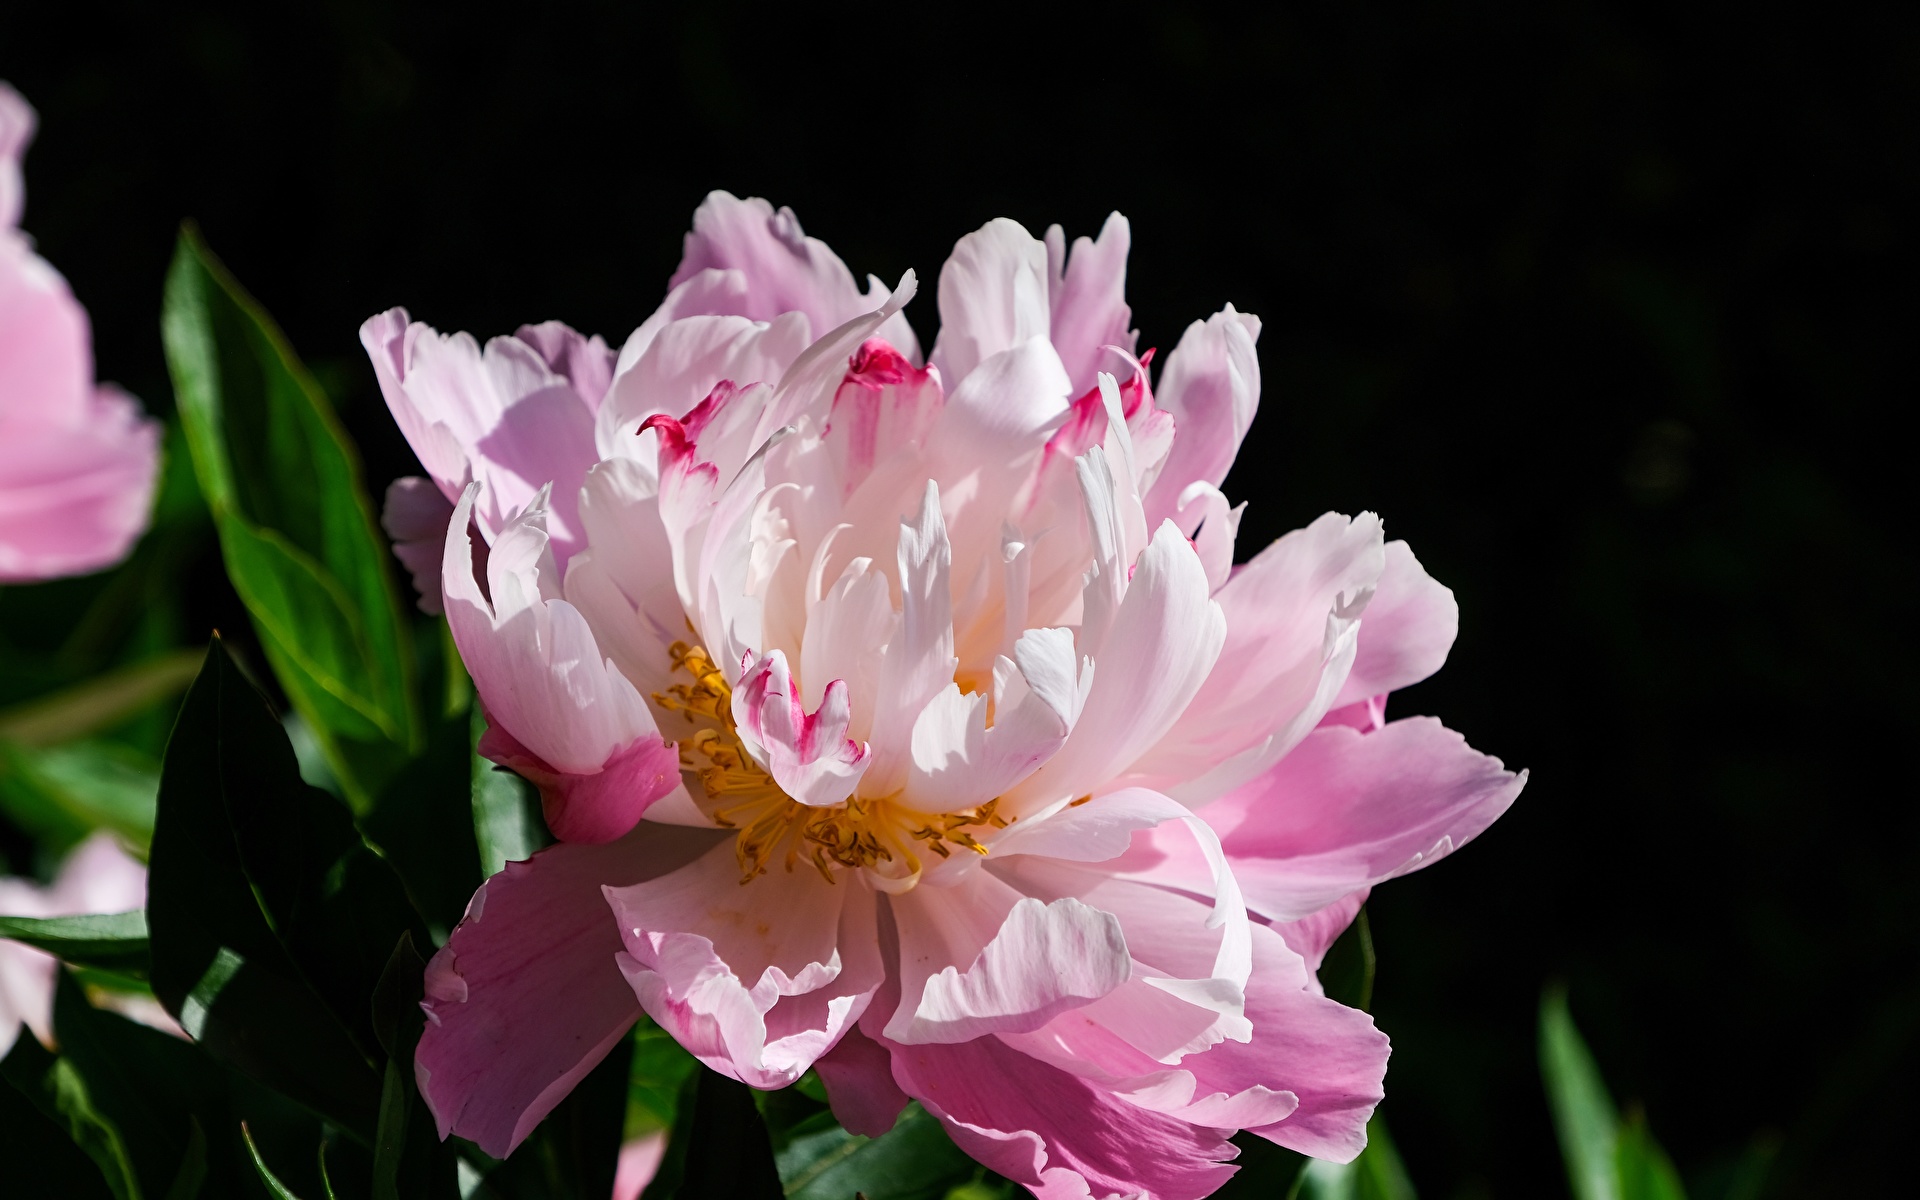 Fotos von Rosa Farbe Blüte Pfingstrosen Großansicht 1920x1200 Blumen hautnah Nahaufnahme